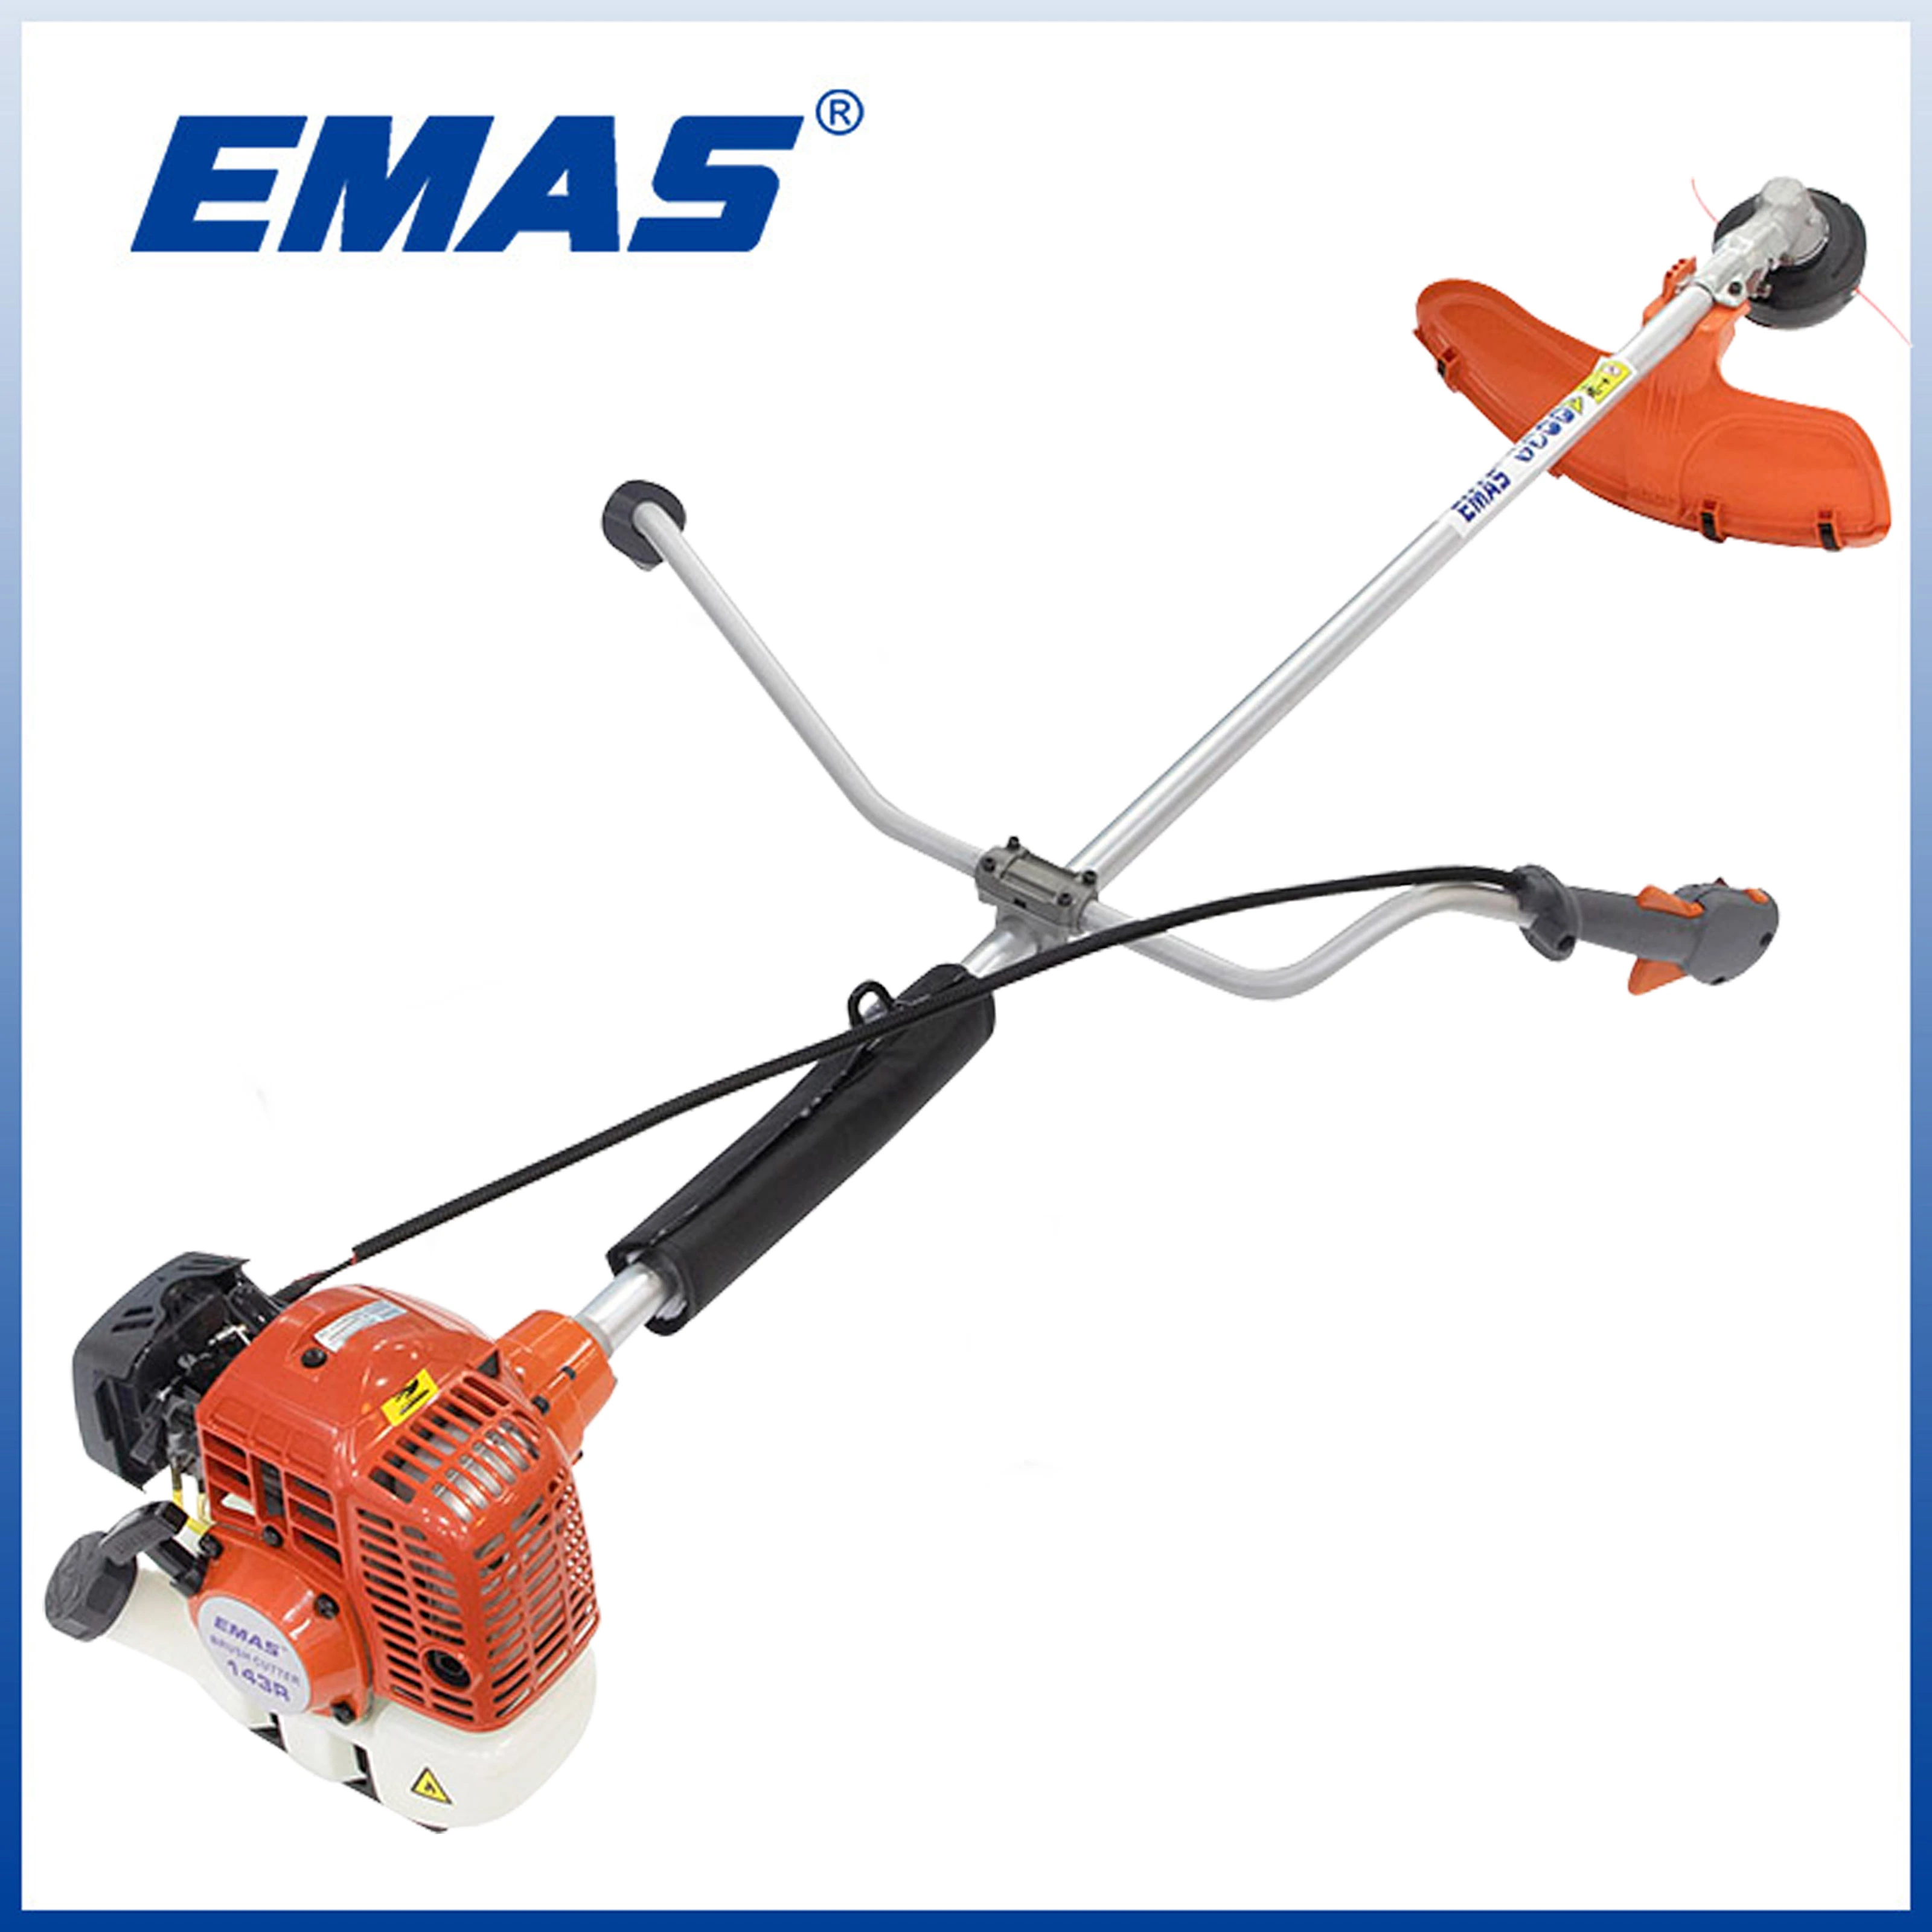 EMAS Neues Modell Professional Grass Trimmer Eh143r Bürstenschneider in 43cc